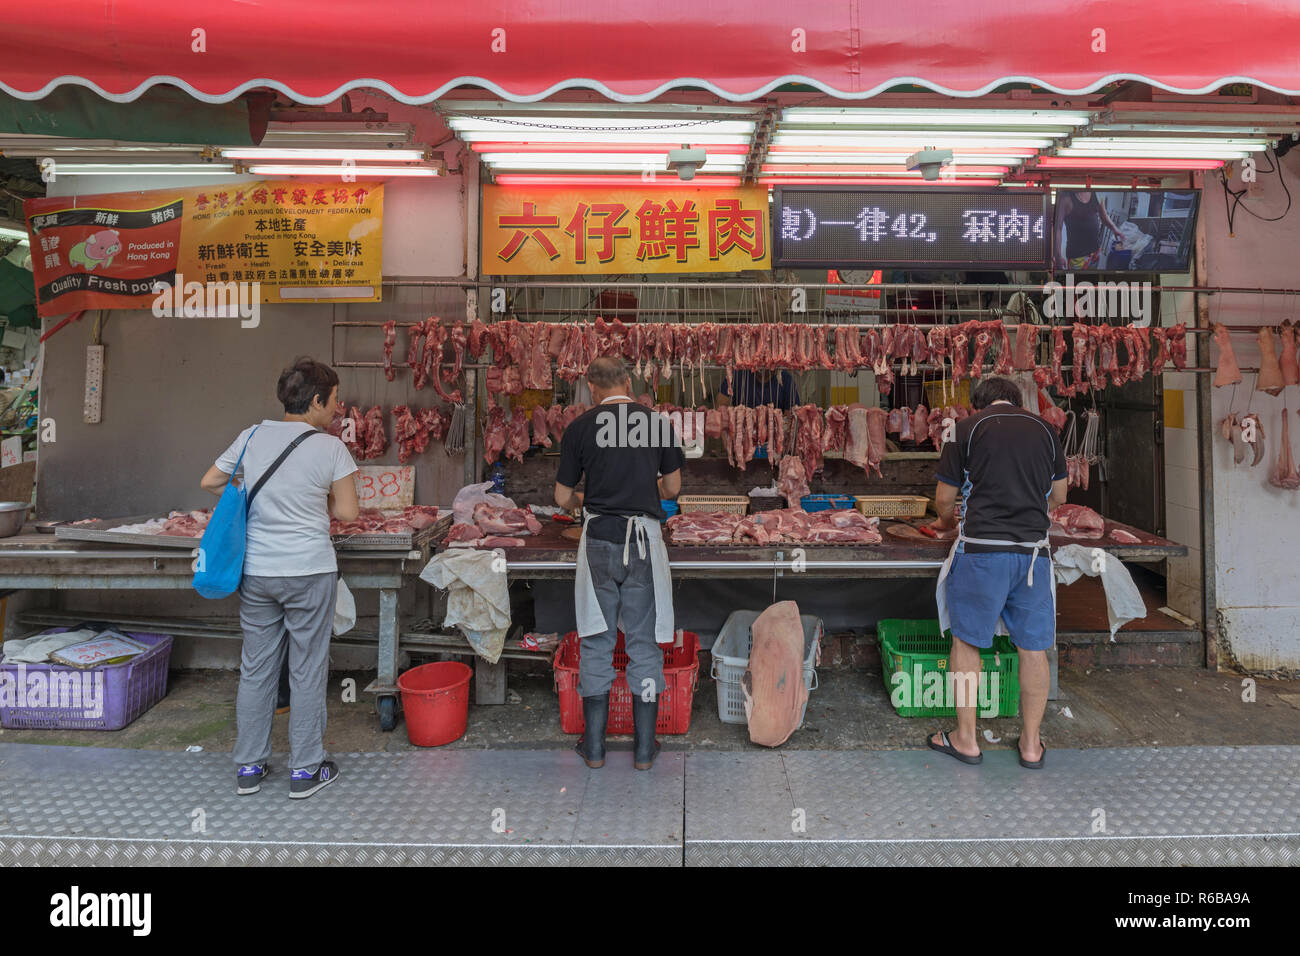 KOWLOON, HONG KONG - APRIL 21, 2017:  Butcher Shop at Mong Kok in Kowloon, Hong Kong. Stock Photo